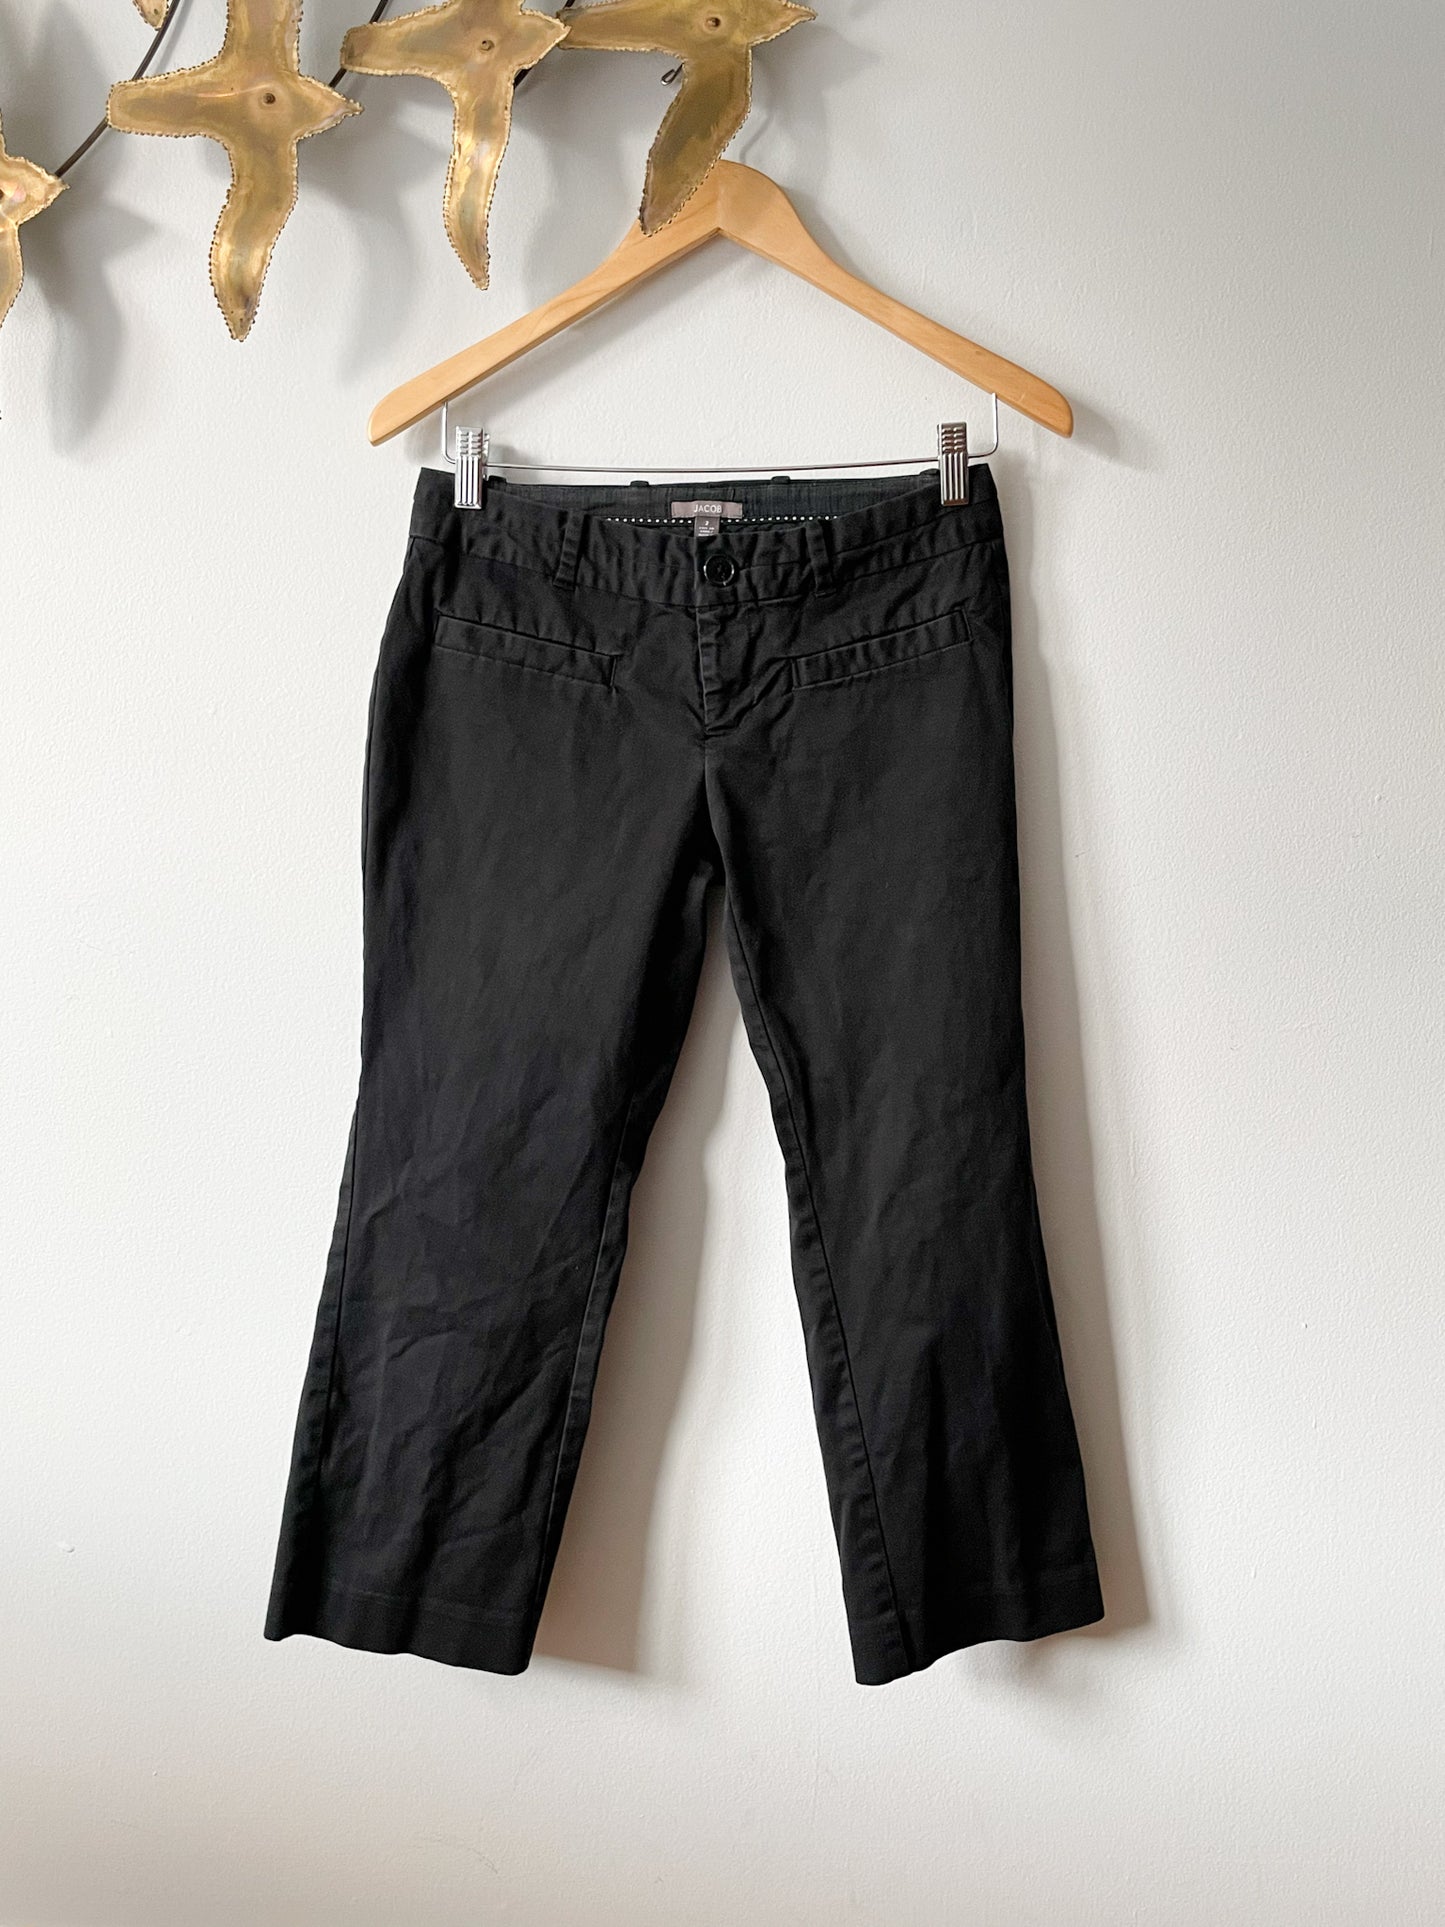 Jacob Black Cotton Stretch Capri Cropped Pants - Size 2 – Le Prix